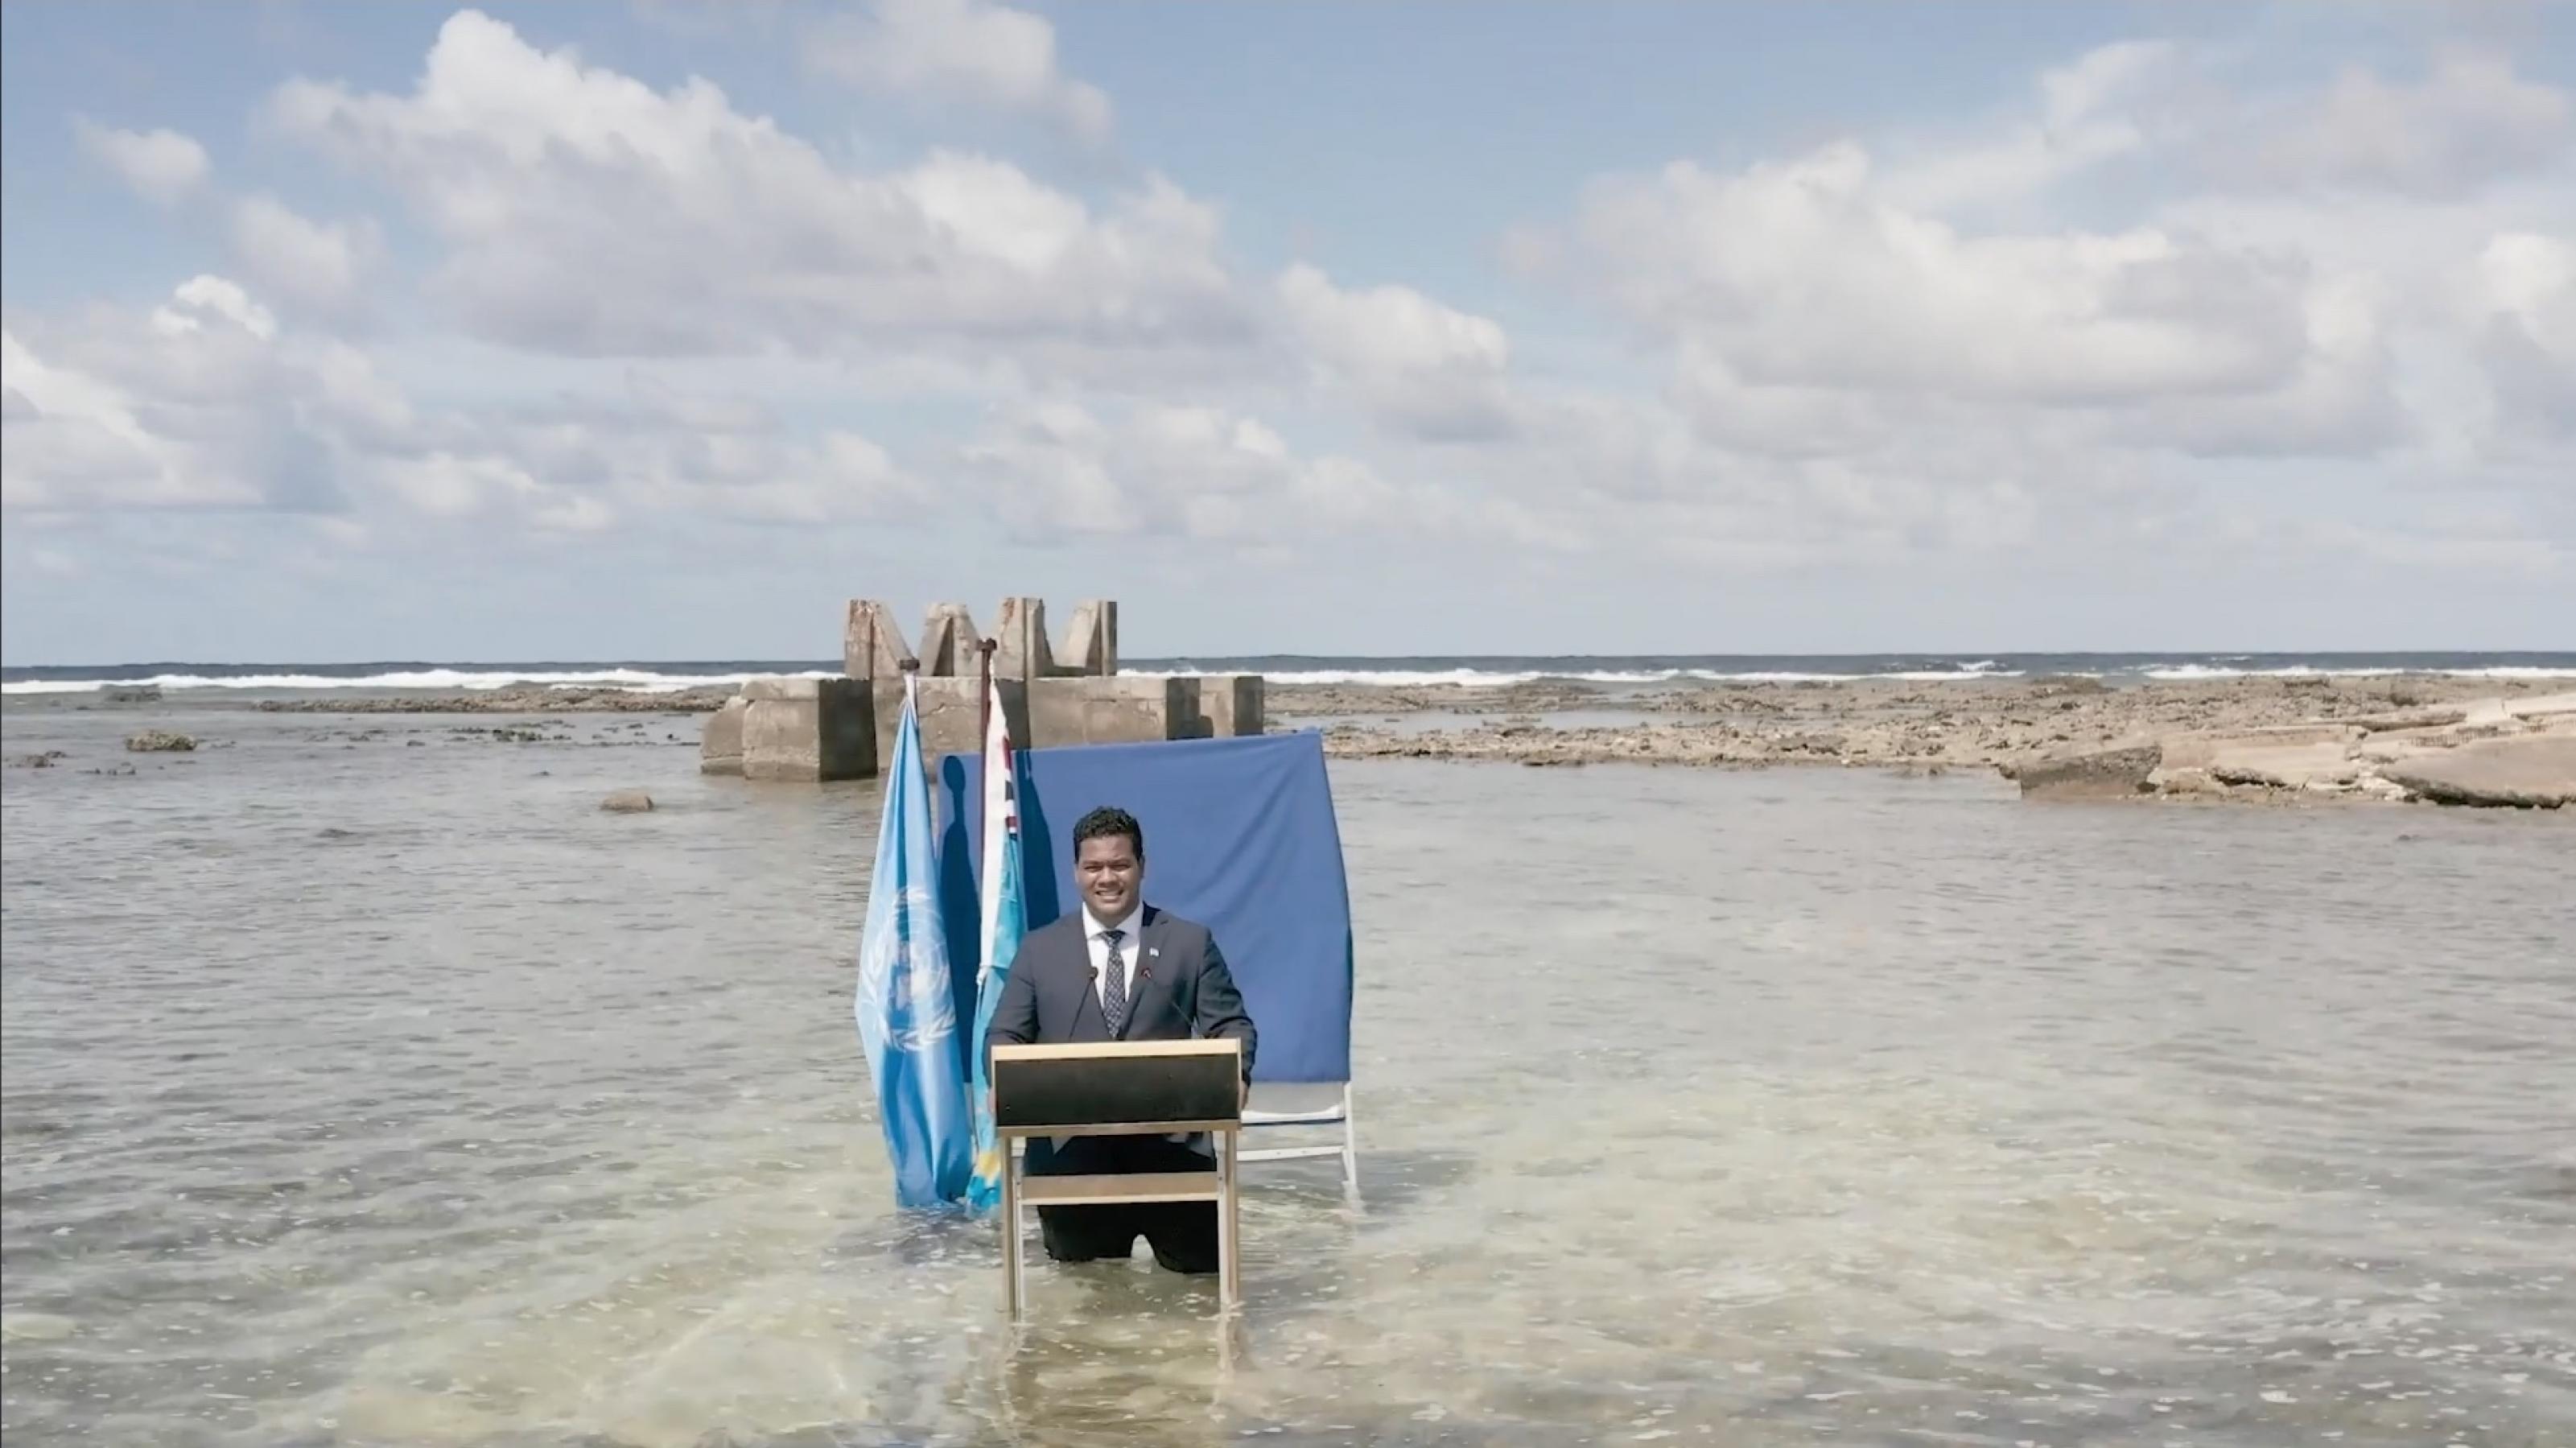 Der Politiker steht an einem Rednerpult vor einem dunkelblauen Vorhang und zwei Flaggen. Das Wasser einer Lagune umspült seine Beine. Im Hintergrund ist eine Gebäuderuine zu sehen. Das Bild ist von einer Drohne aus einigen Metern Höhe aufgenommen.